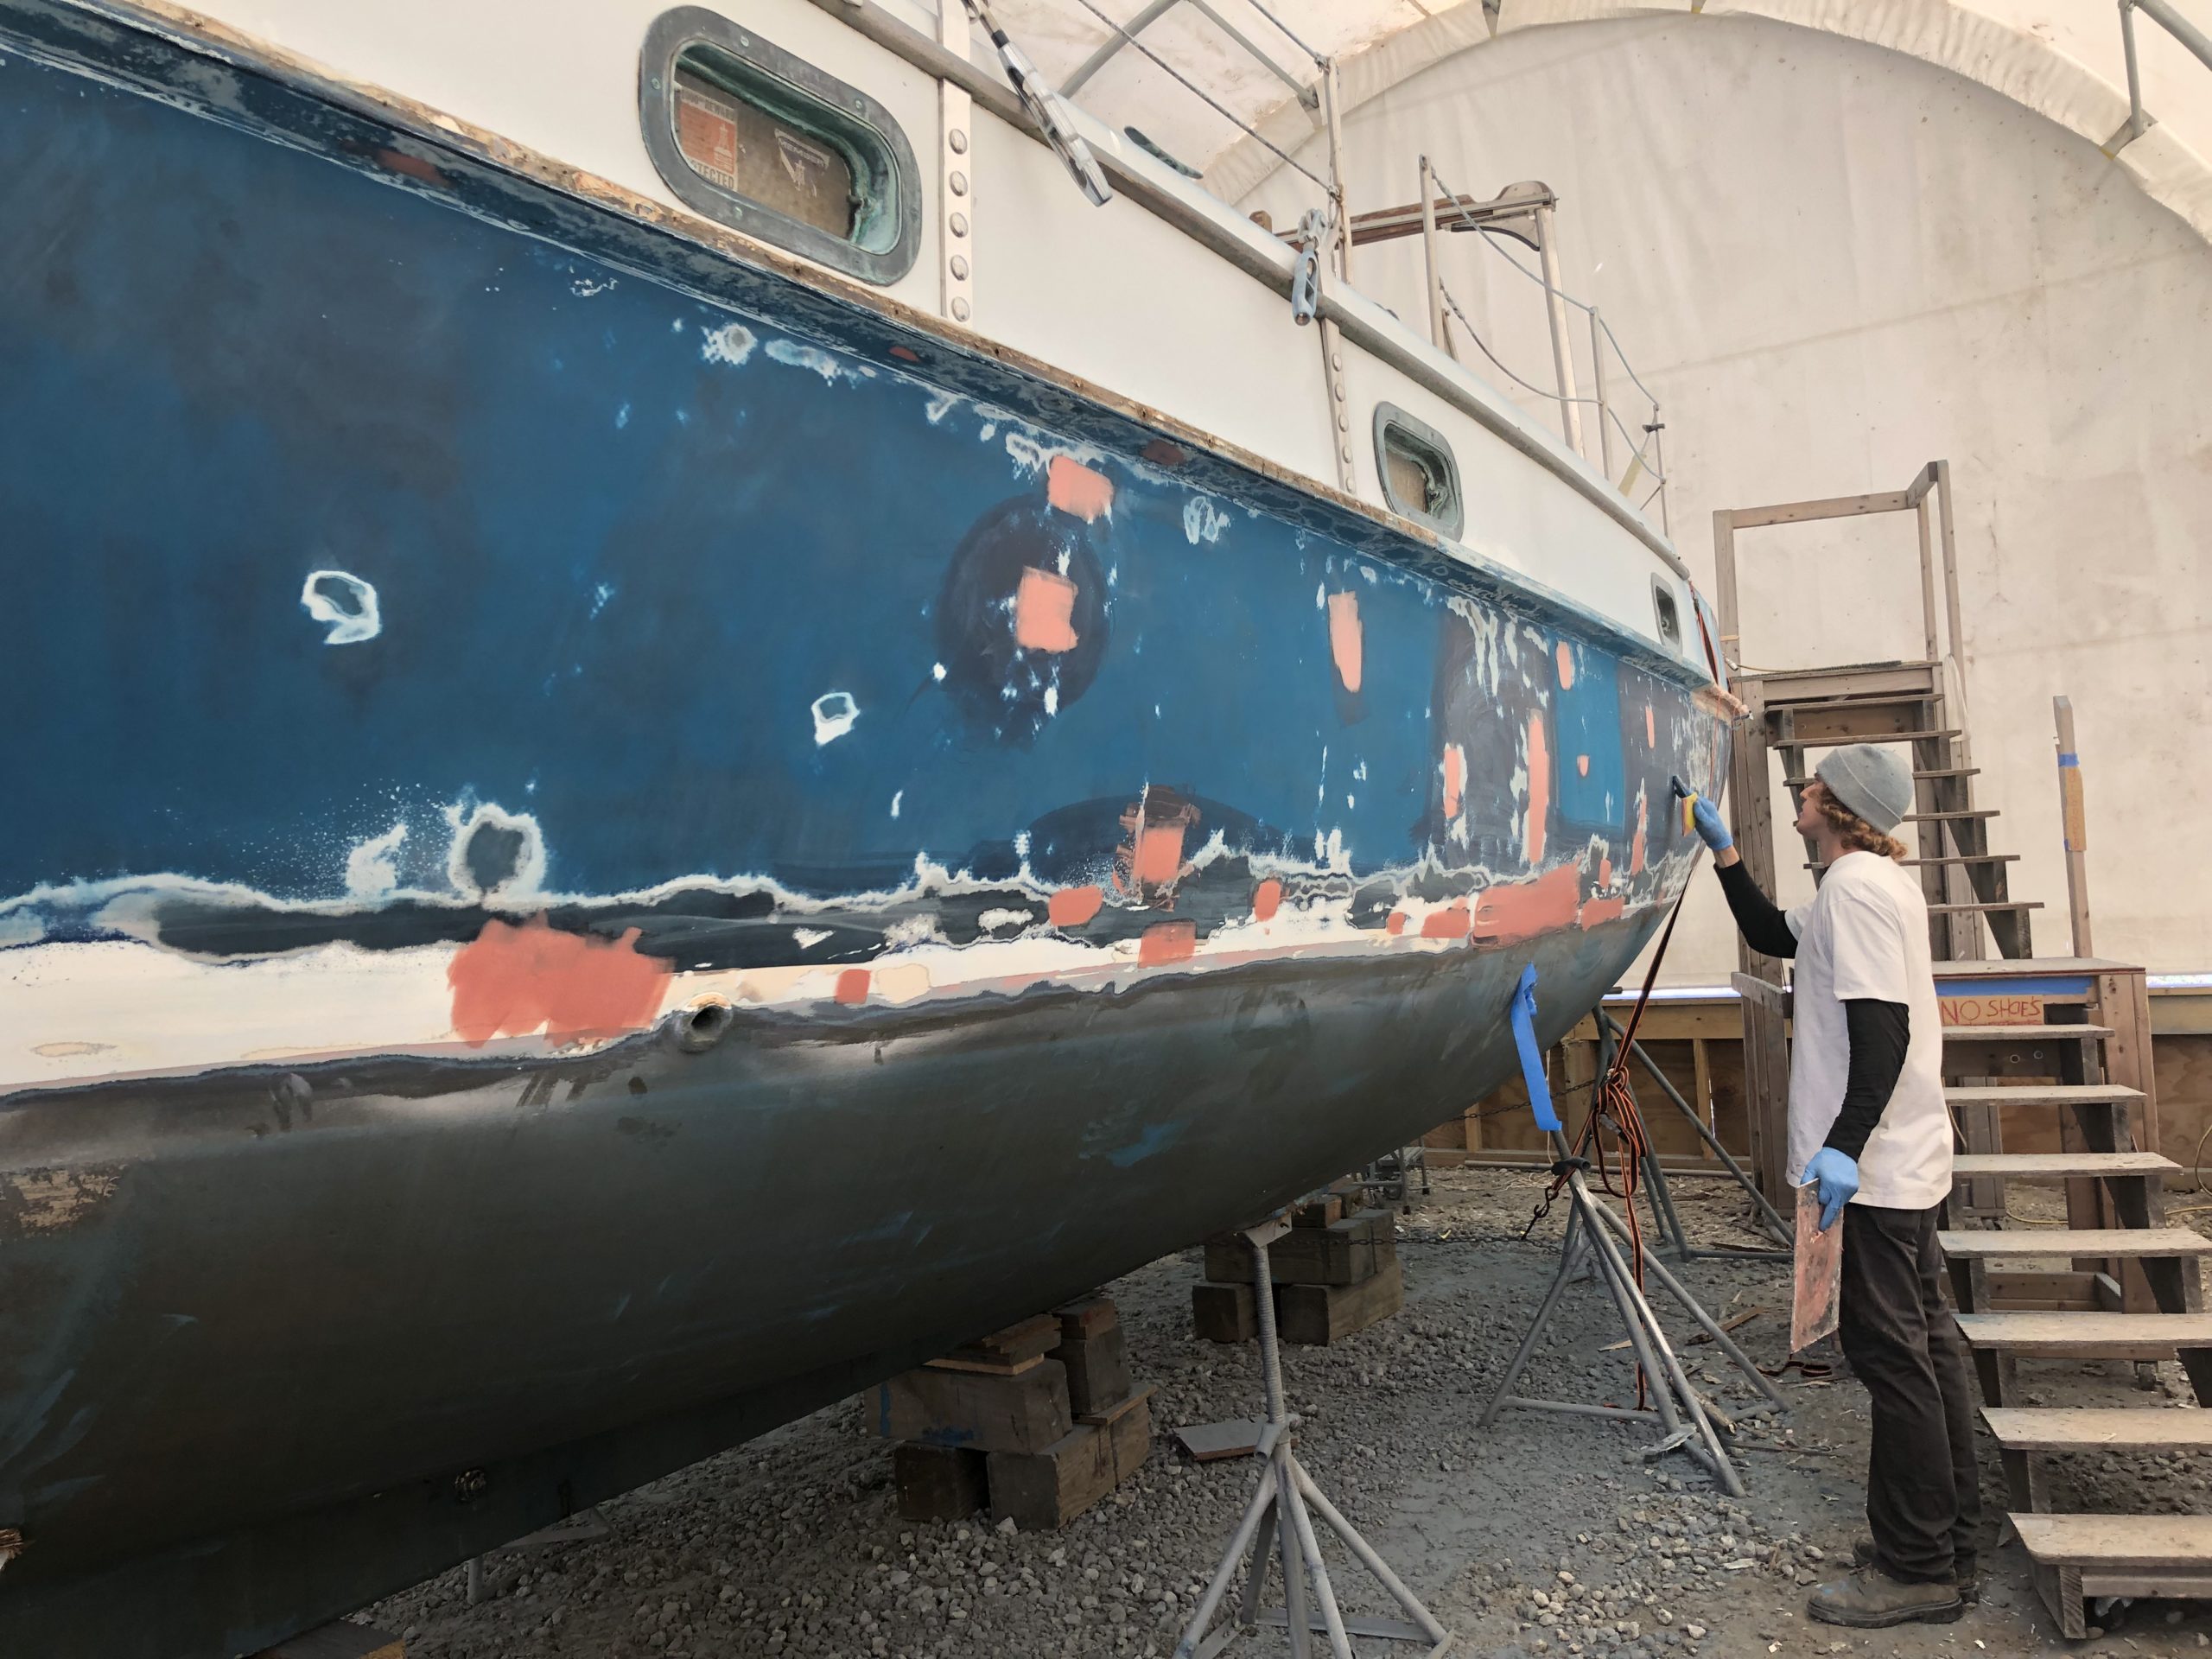 fiberglass-repair-boat-01 - Fiberglass Repair Boat 01 ScaleD